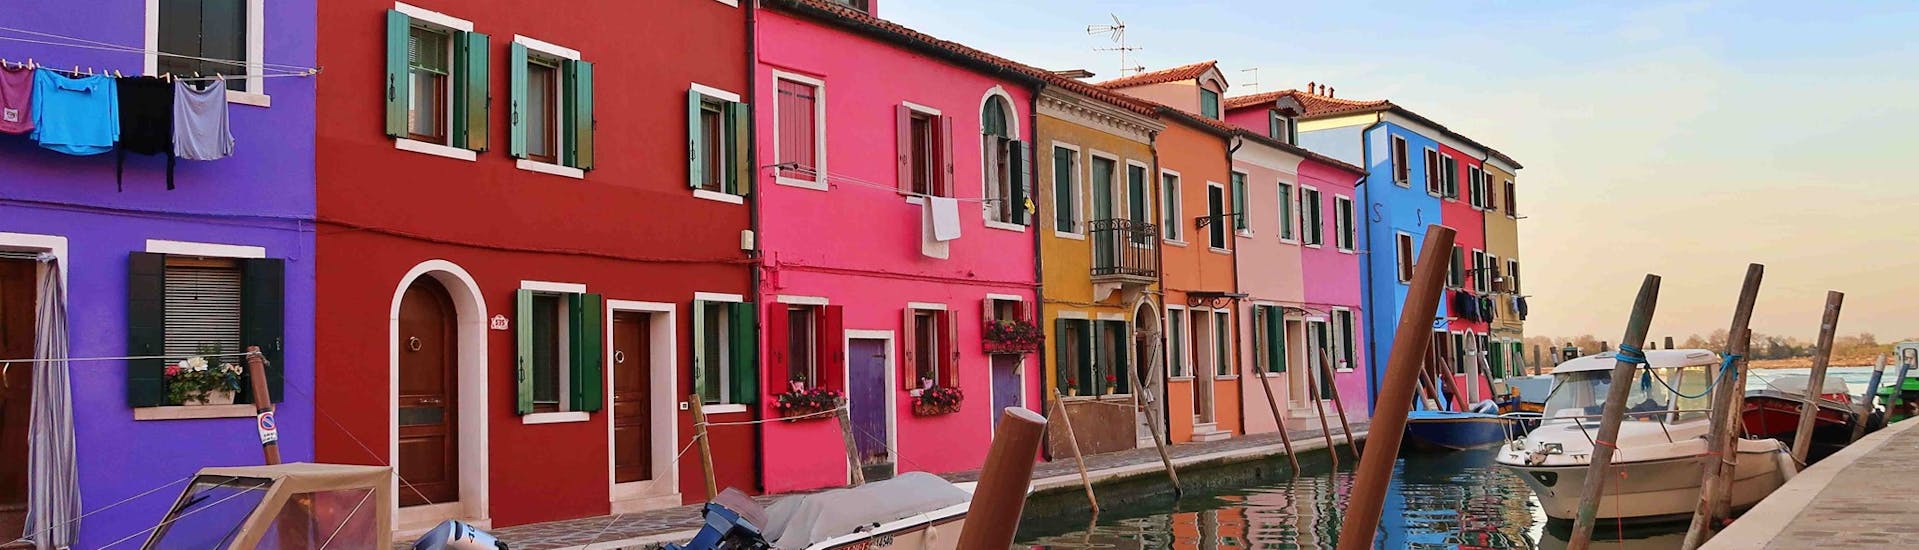 Une photo des maisons colorées prise à Burano lors de la balade en bateau de Punta Sabbioni à Murano, Burano et Torcello avec Il Doge di Venezia.